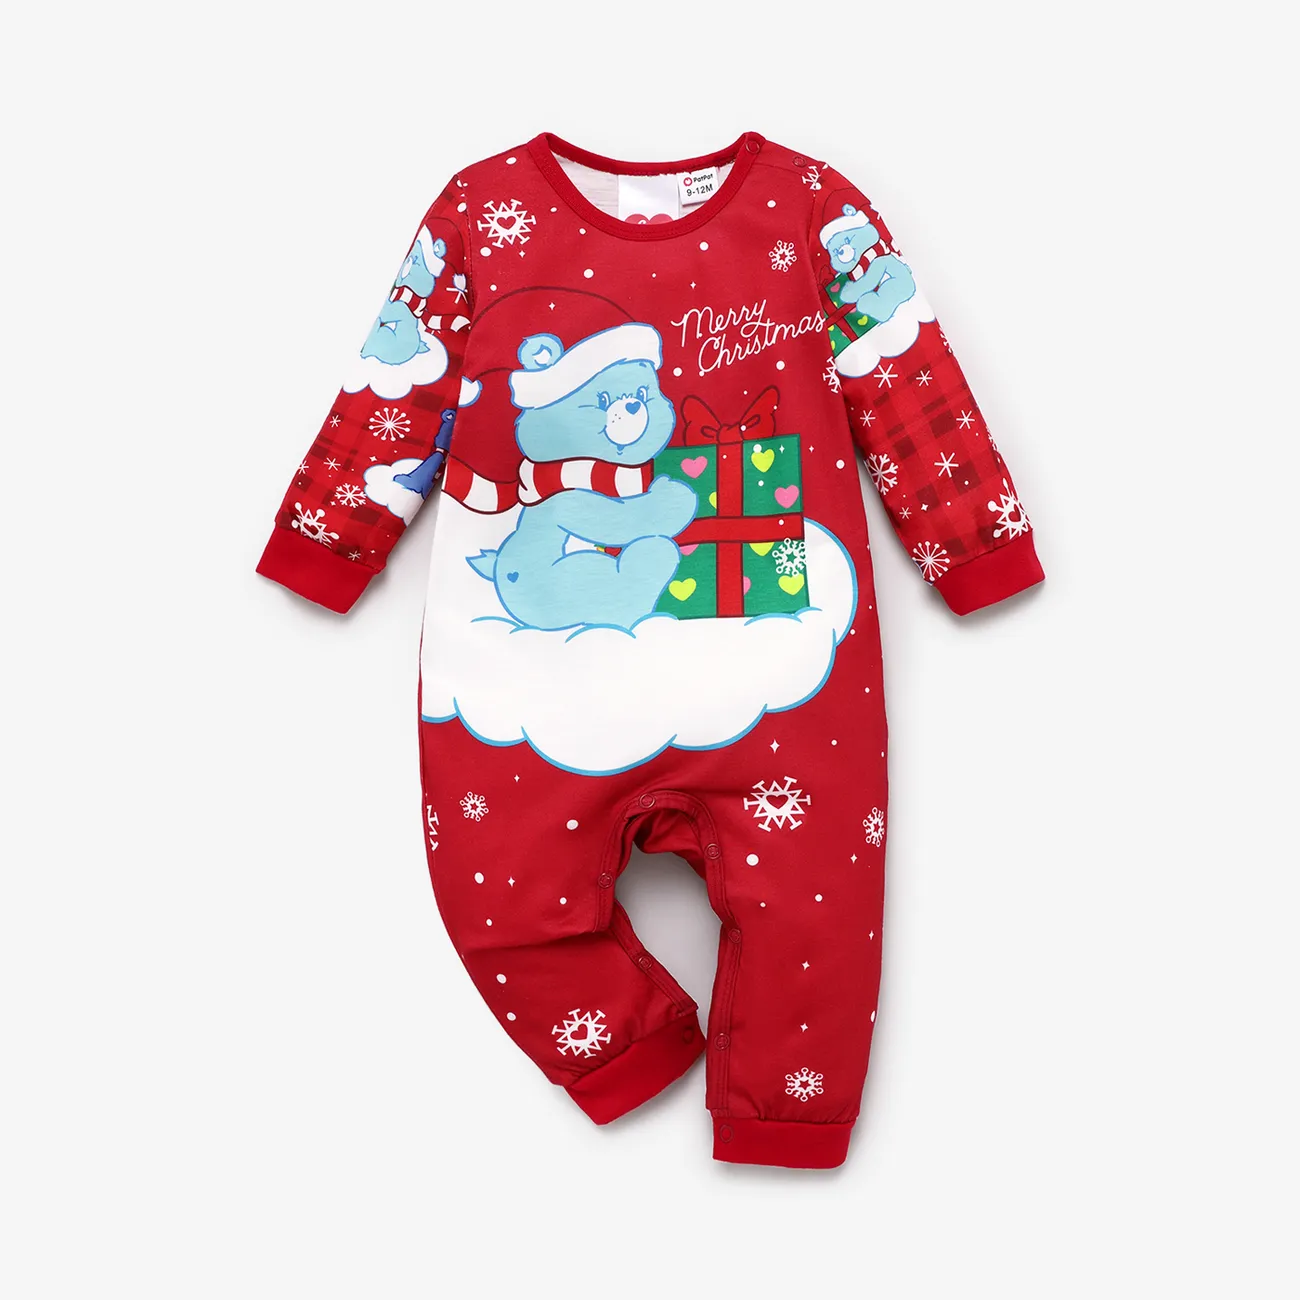 Les Bisounours Noël Look Familial Manches longues Tenues de famille assorties Pyjamas (Flame Resistant) Rouge big image 1